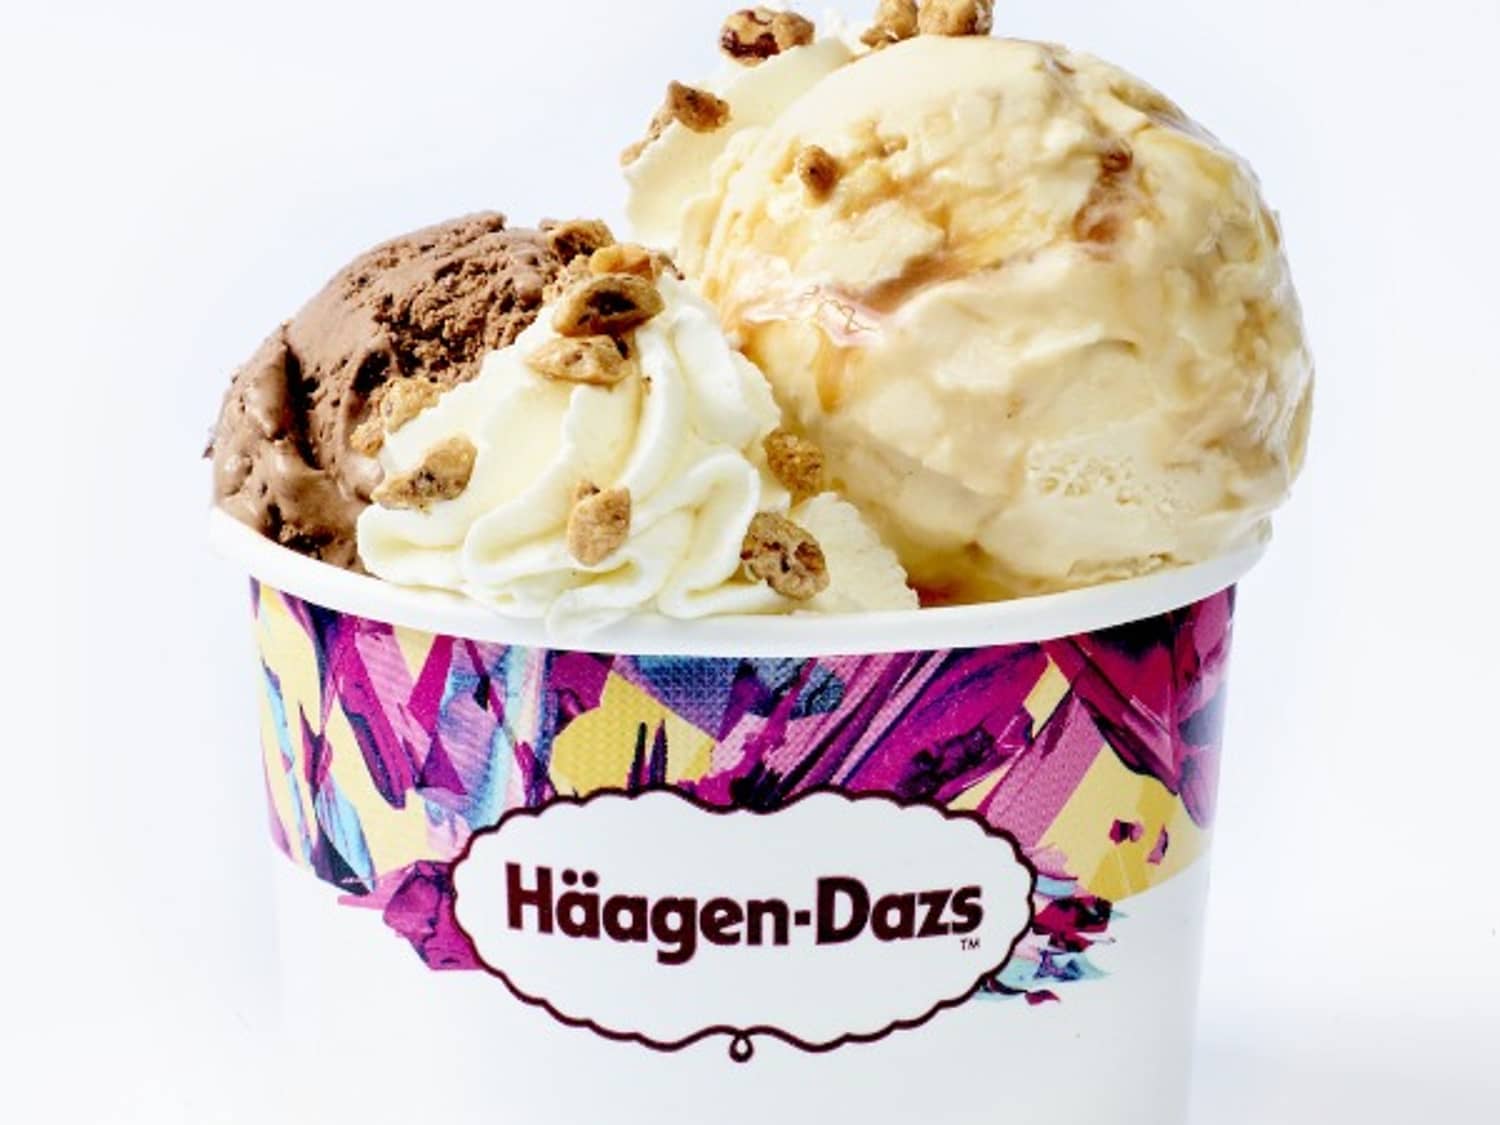 Haagen-Dazs – Brands – Food we make - General Mills